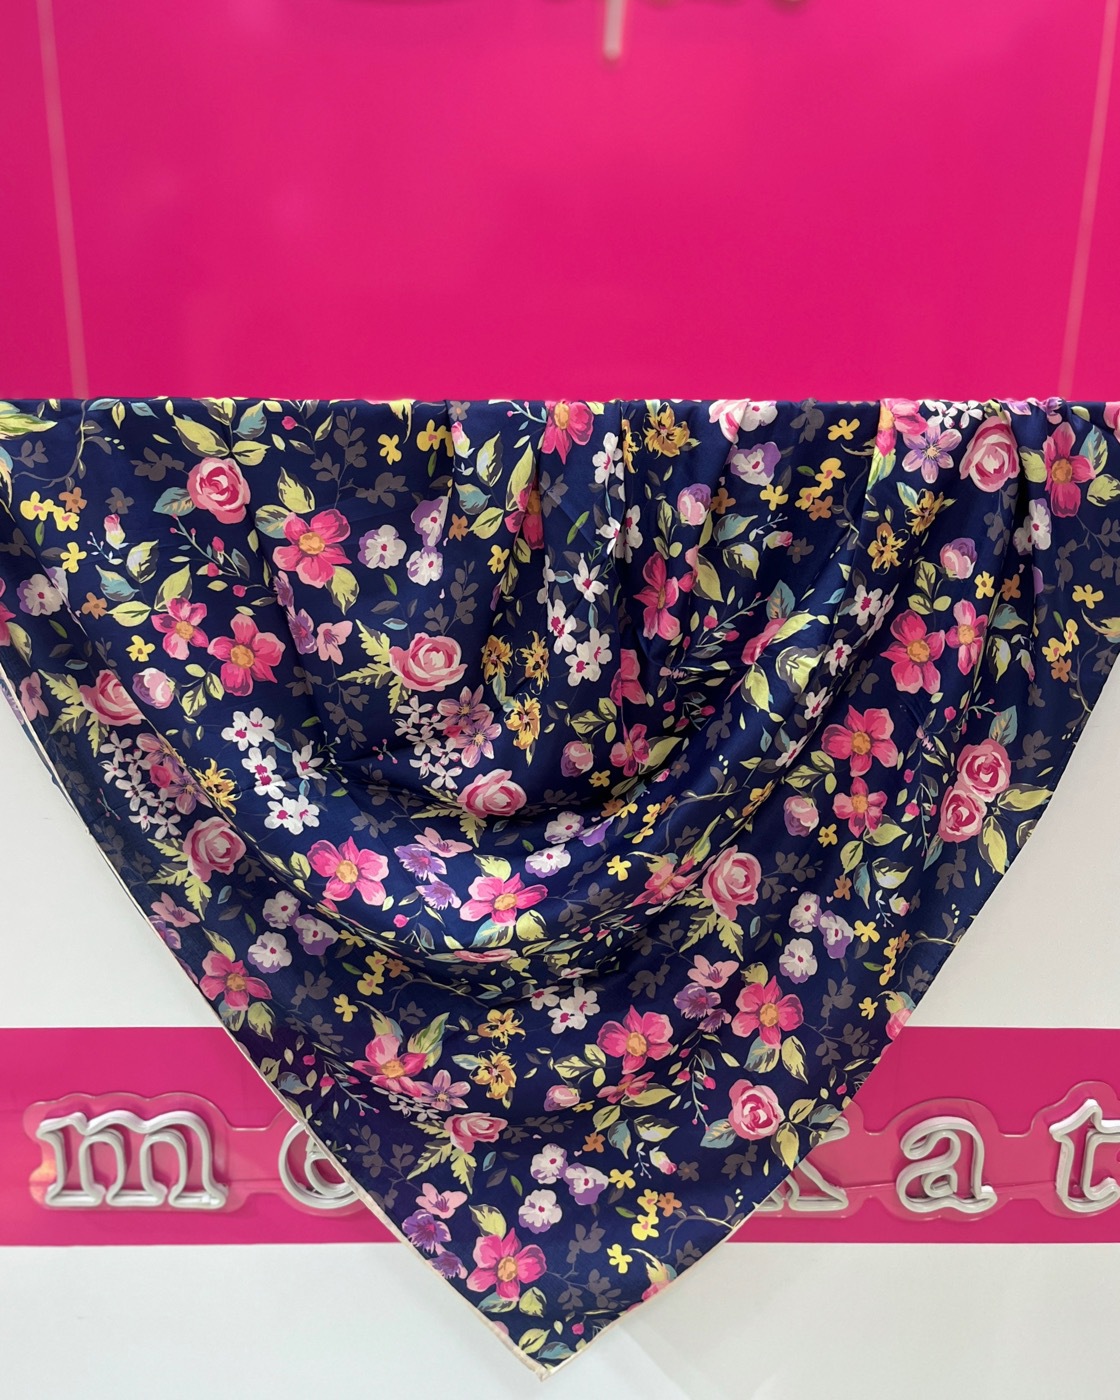  روسری نخی با طرح گل های بهاری، کیفیت عالی و قیمت استثنایی 